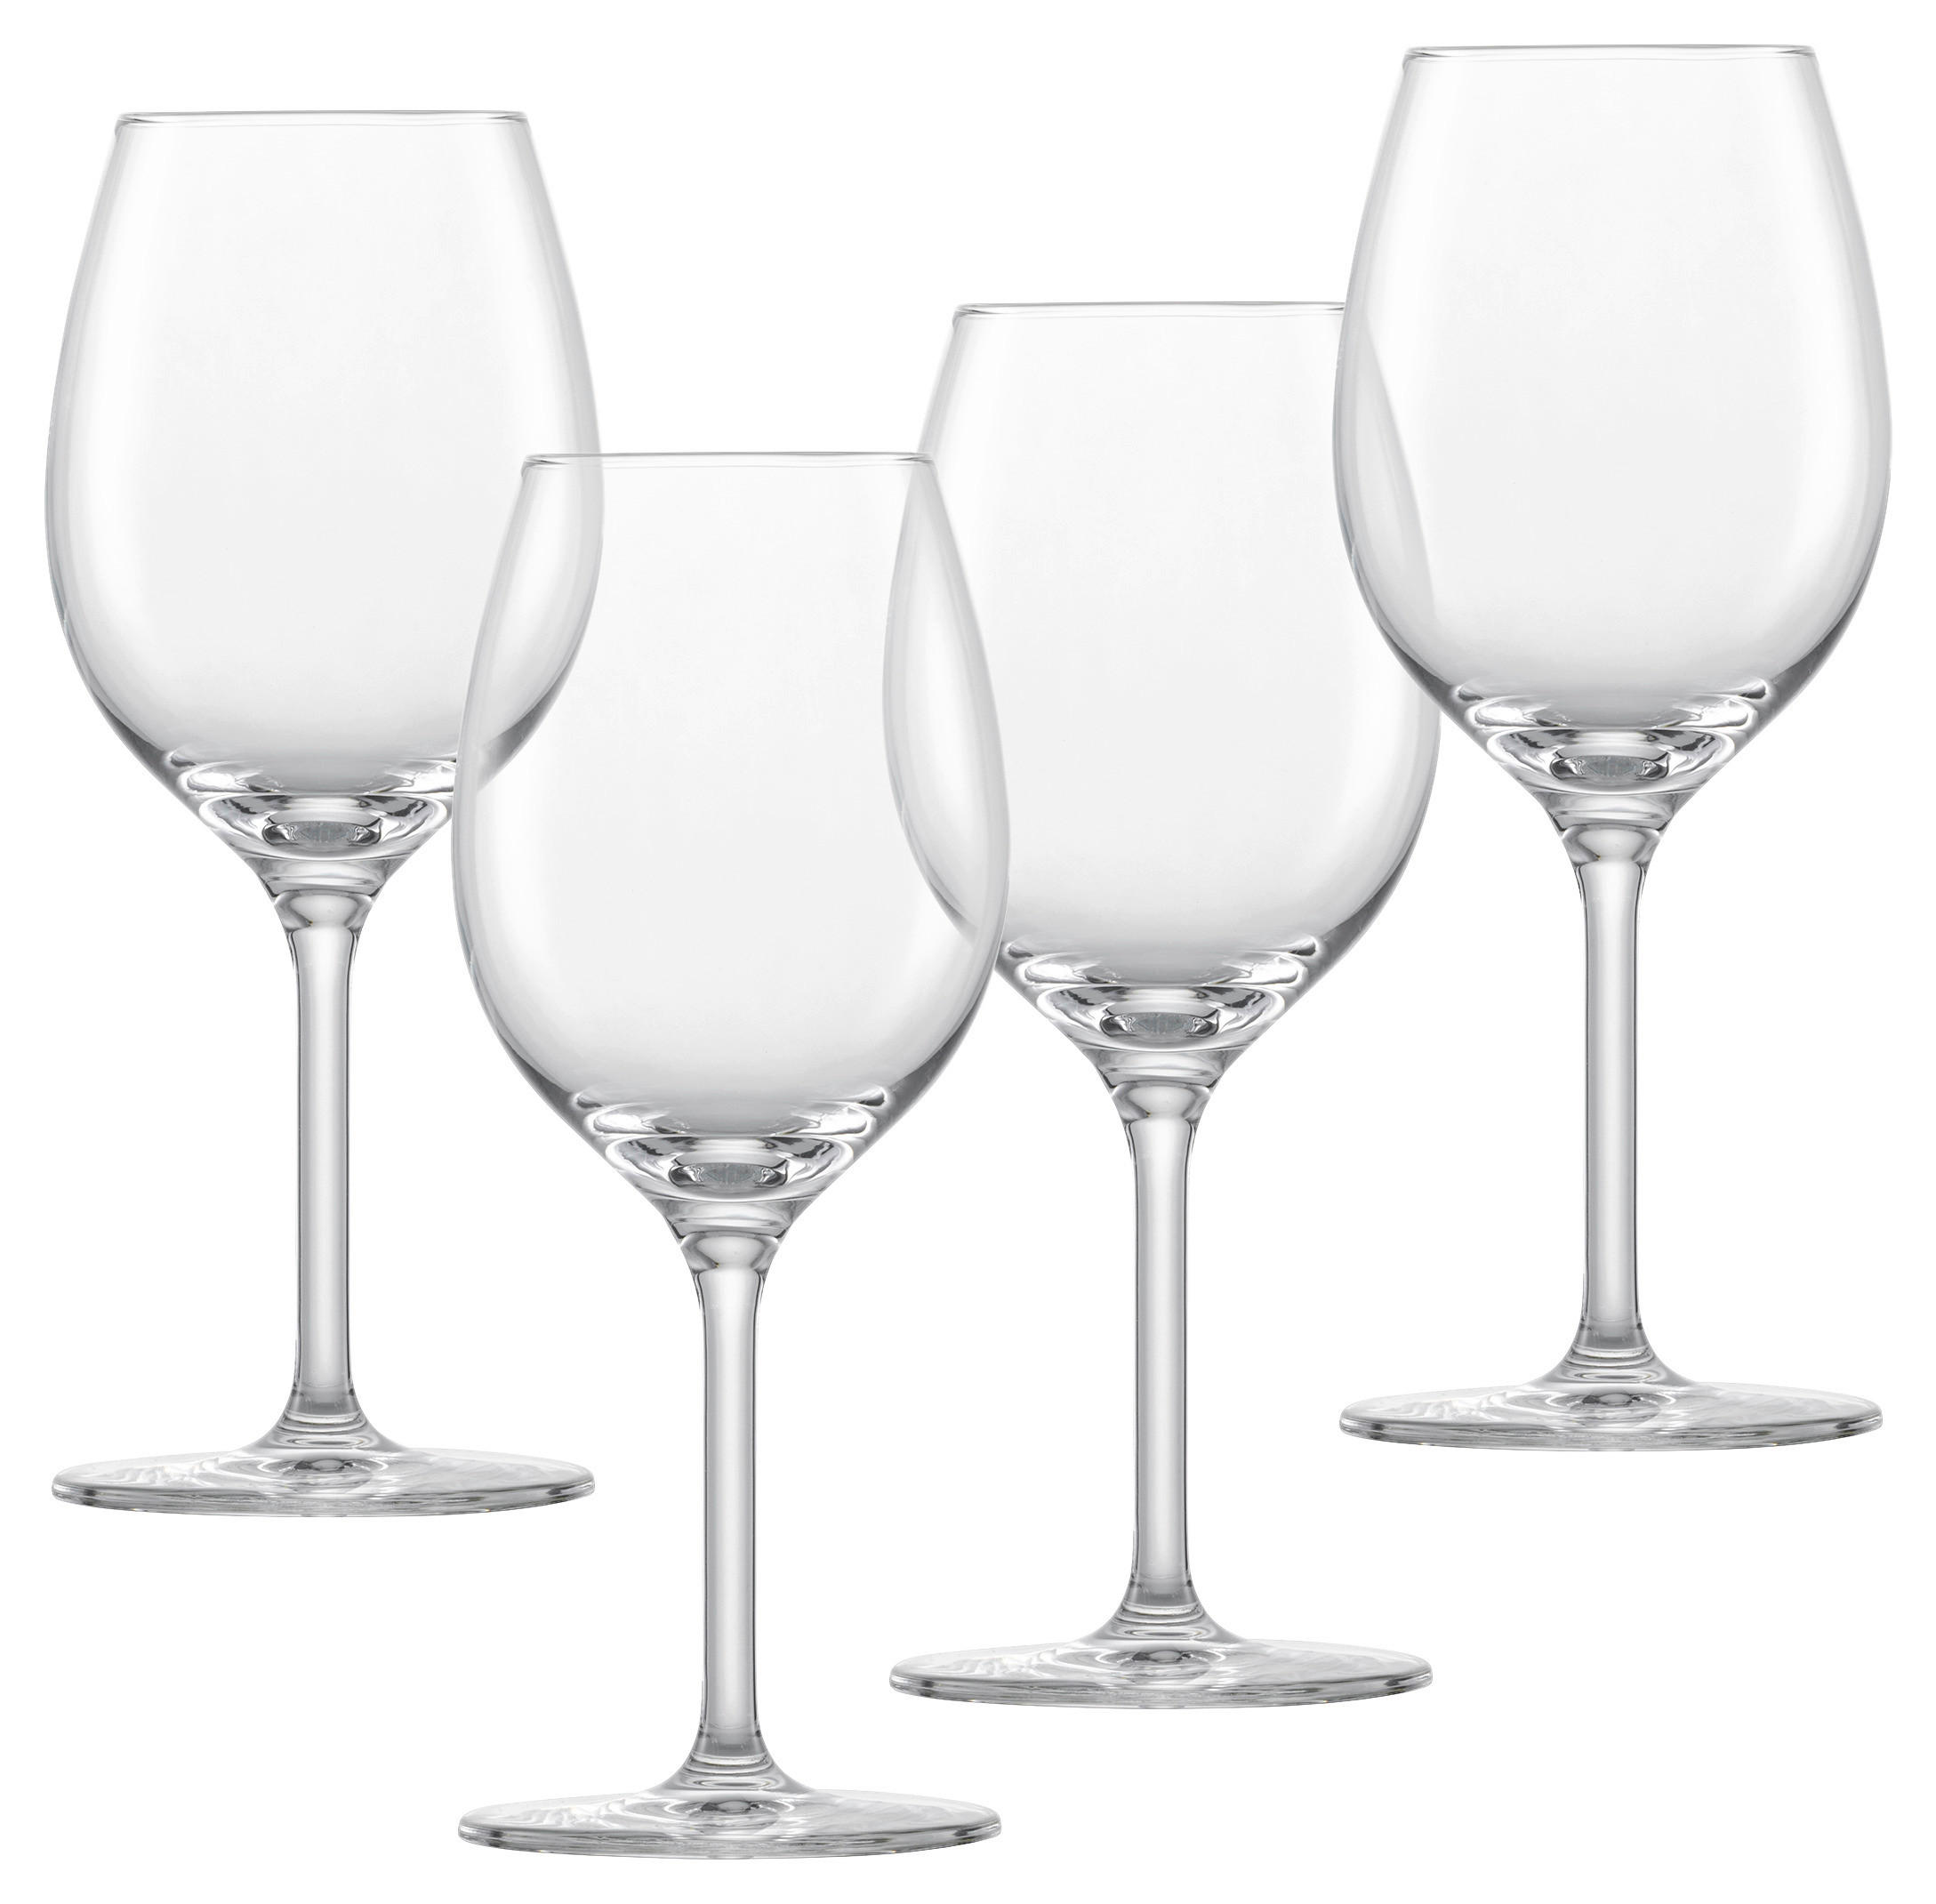 GLÄSERSET 4-teilig  - Klar, KONVENTIONELL, Glas (8,0/20,0cm) - Schott Zwiesel